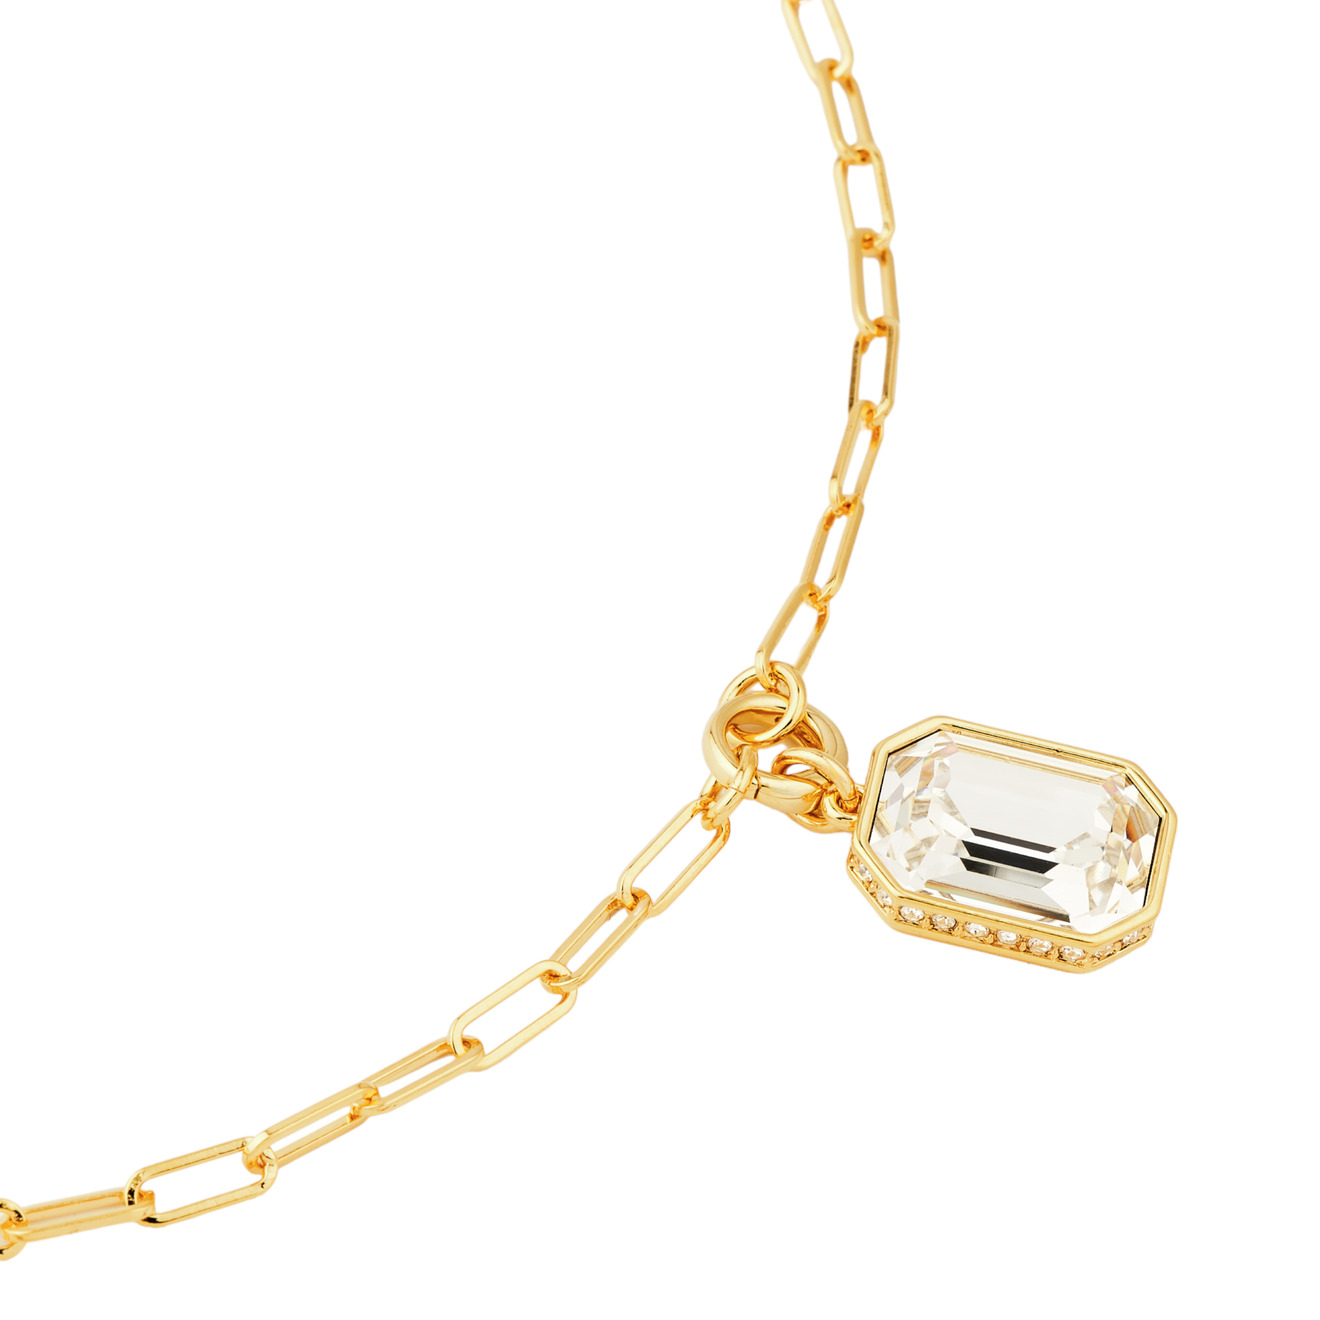 lisa smith золотистая цепочка с подвеской с черным кристаллом Aloud Золотистая цепь с крупным кристаллом